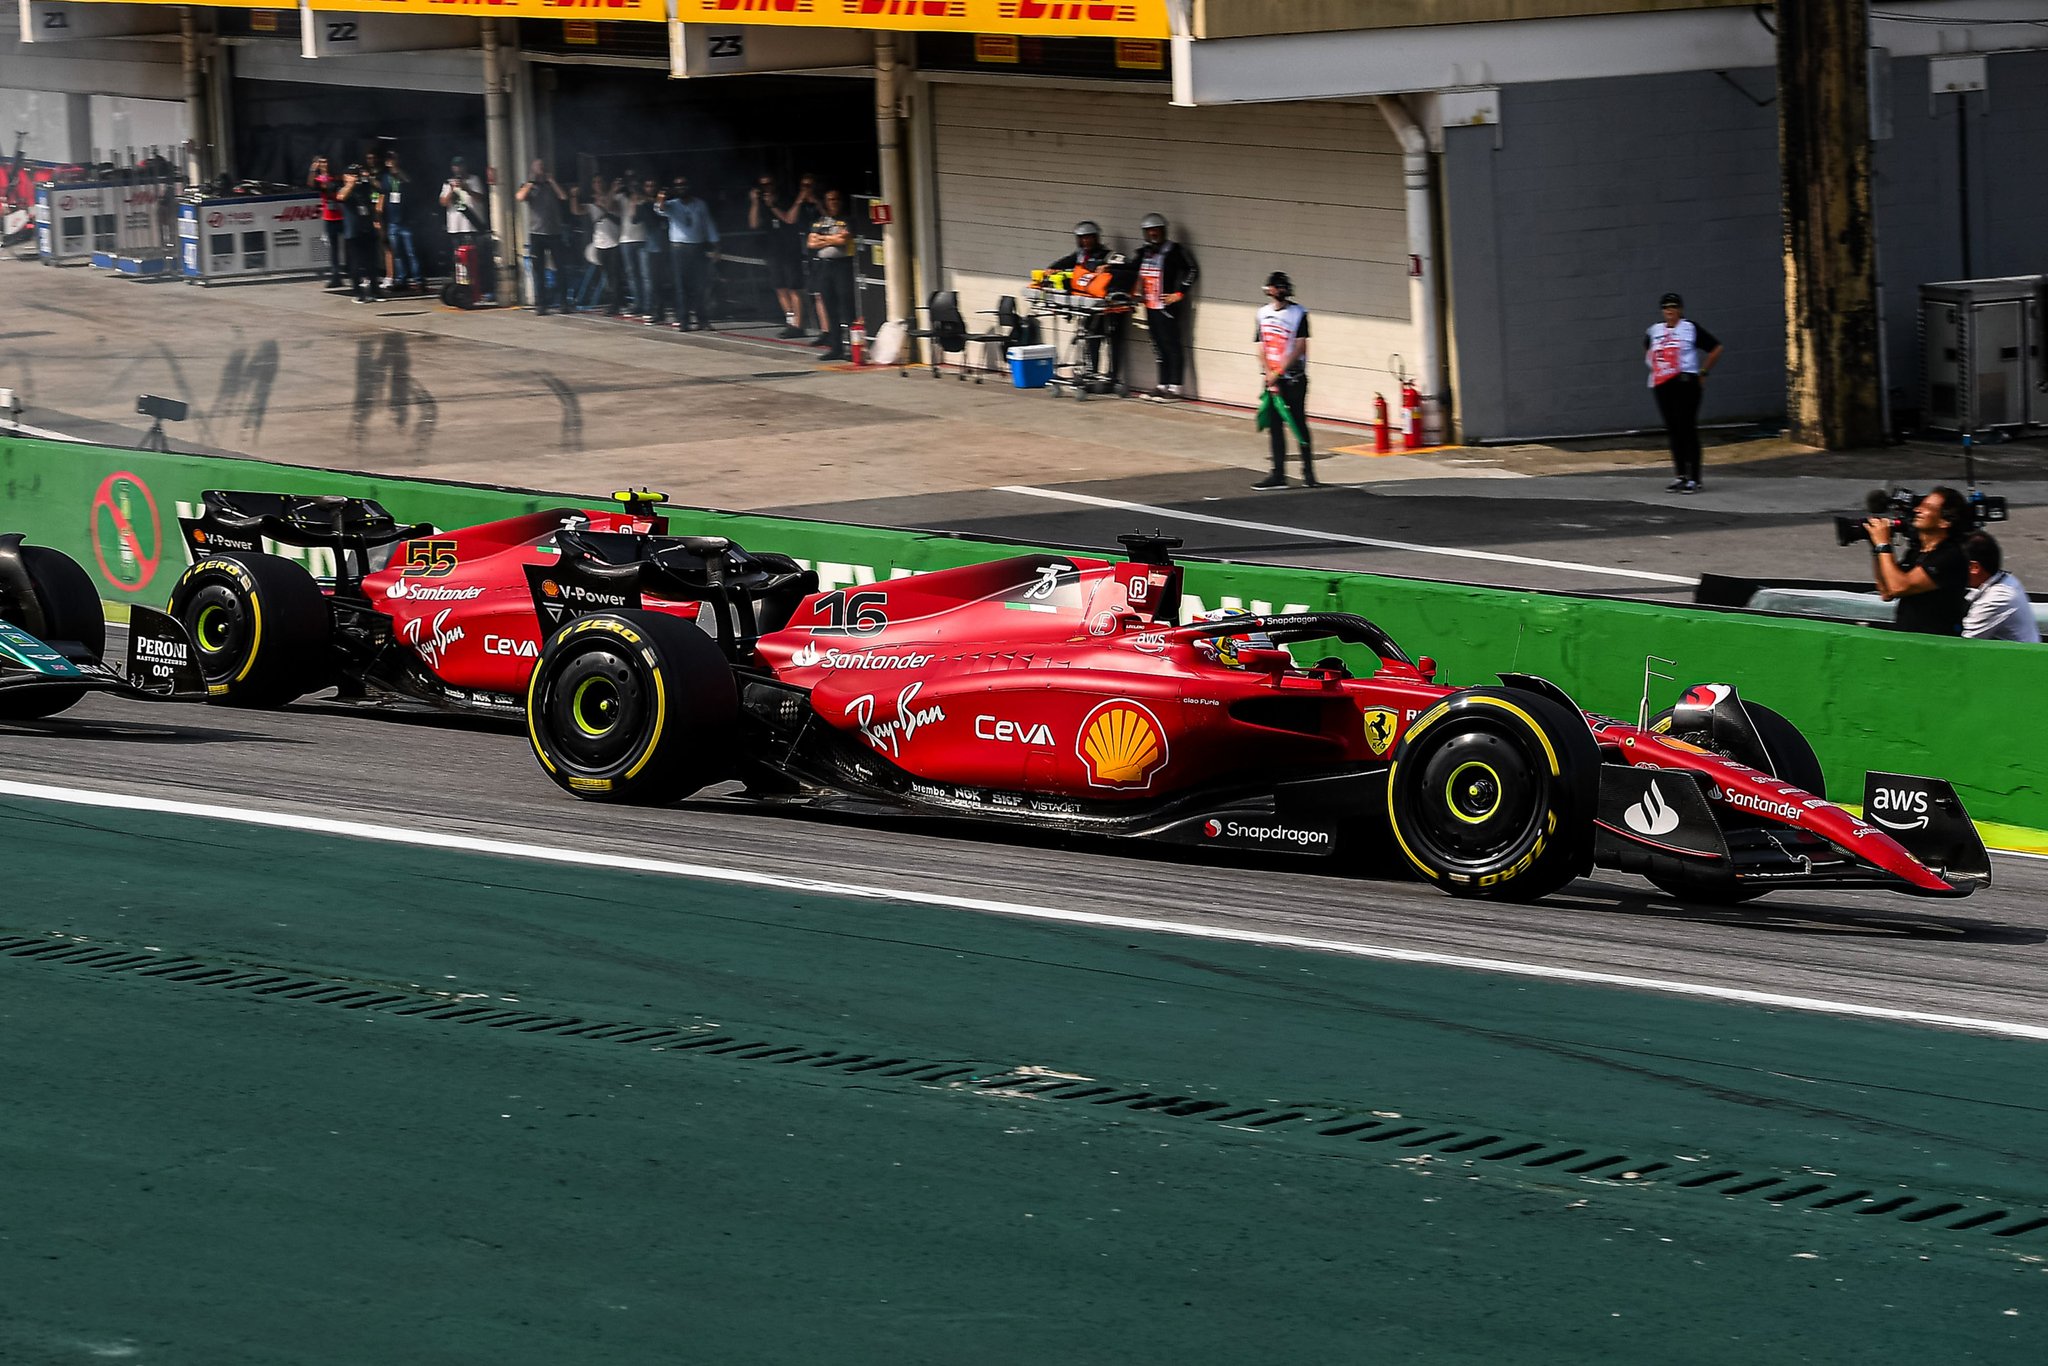 Brézil : Binotto explique que ça aurait été risqué d'intervertir Sainz et Leclerc - Crédit photo : Scuderia Ferrari